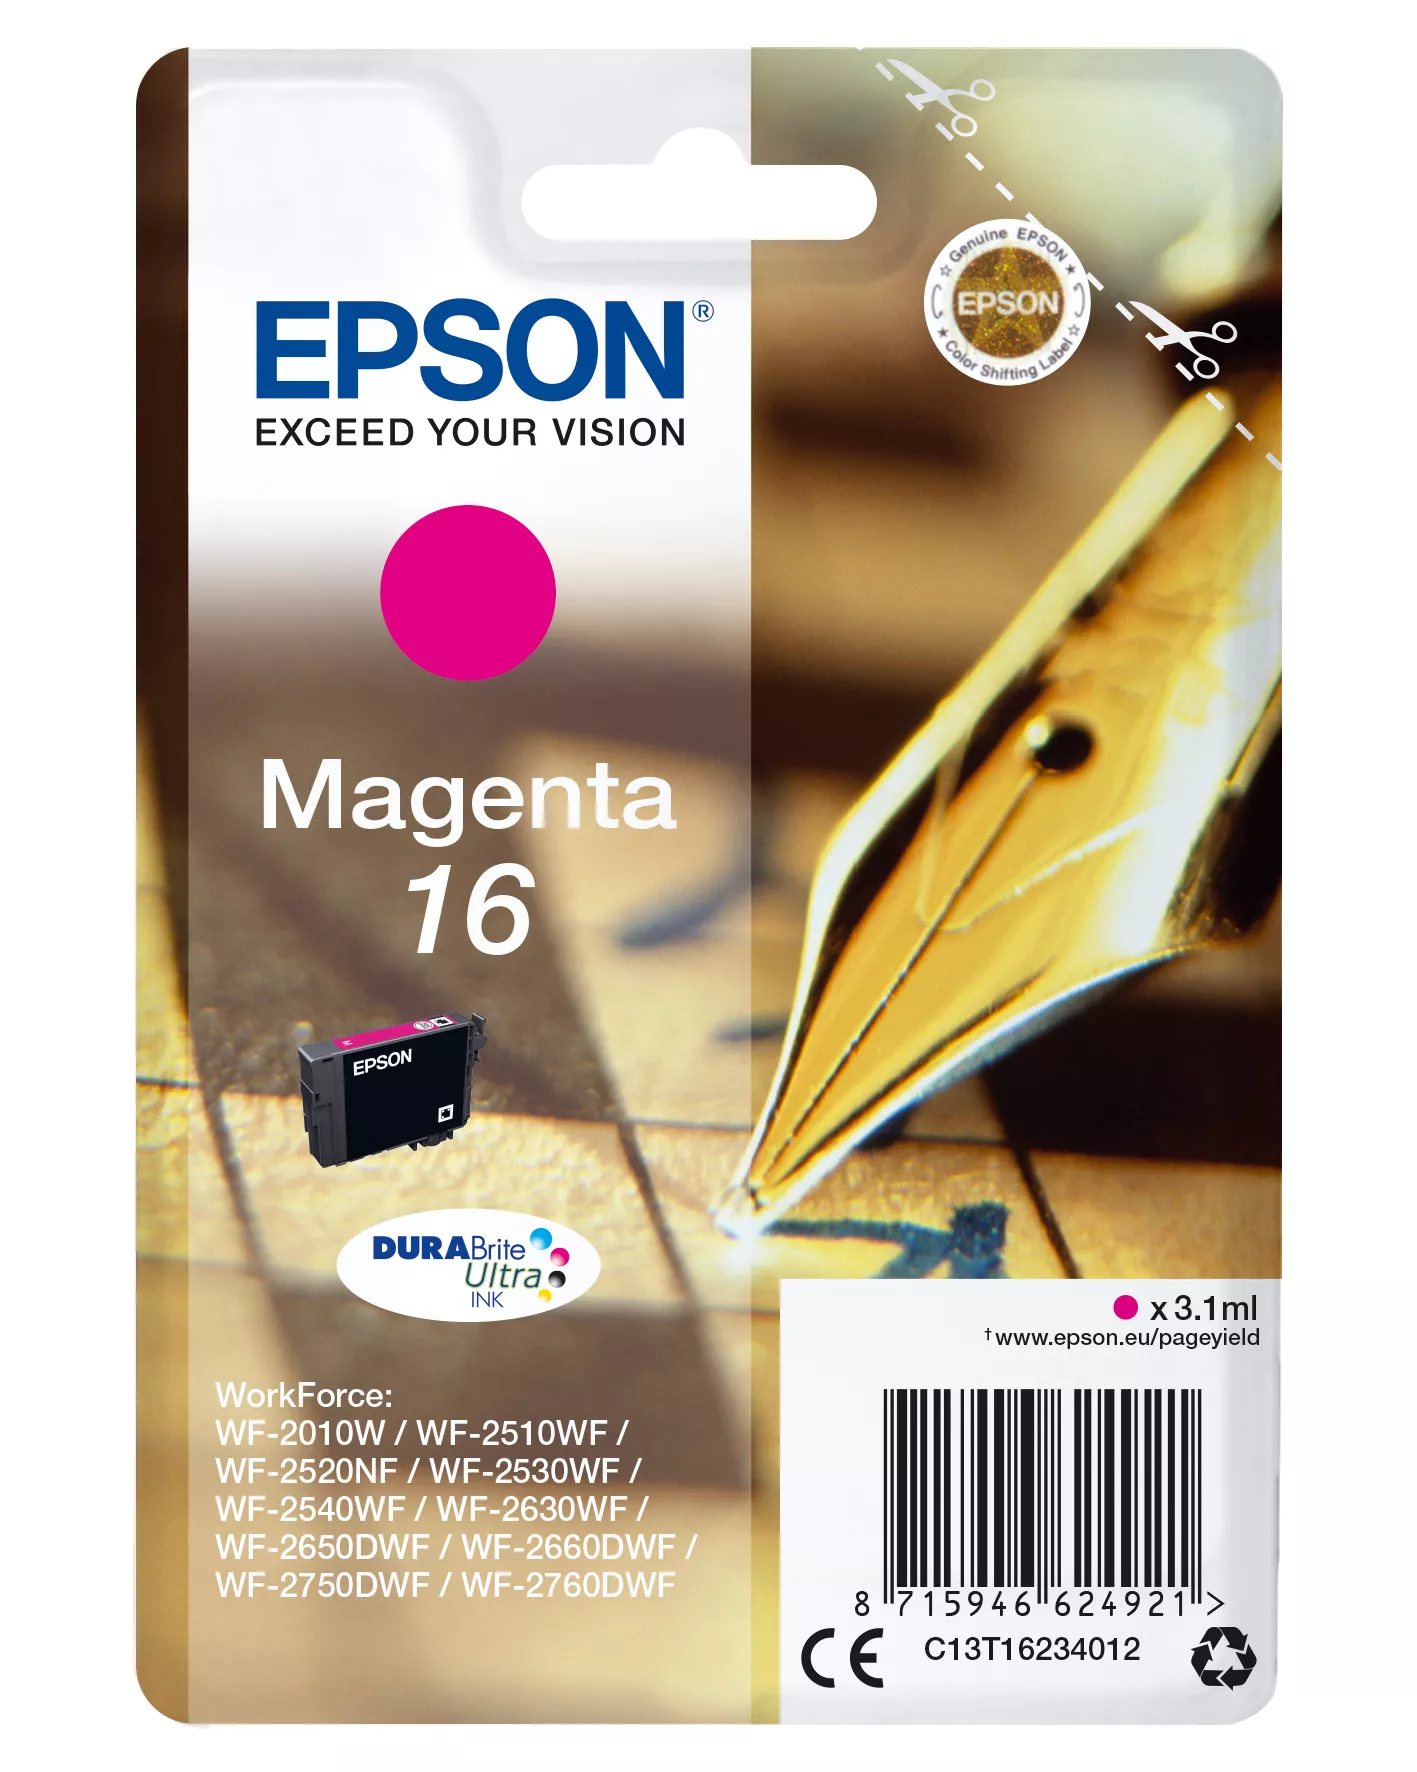 Achat EPSON 16 cartouche dencre magenta capacité standard 3.1ml au meilleur prix